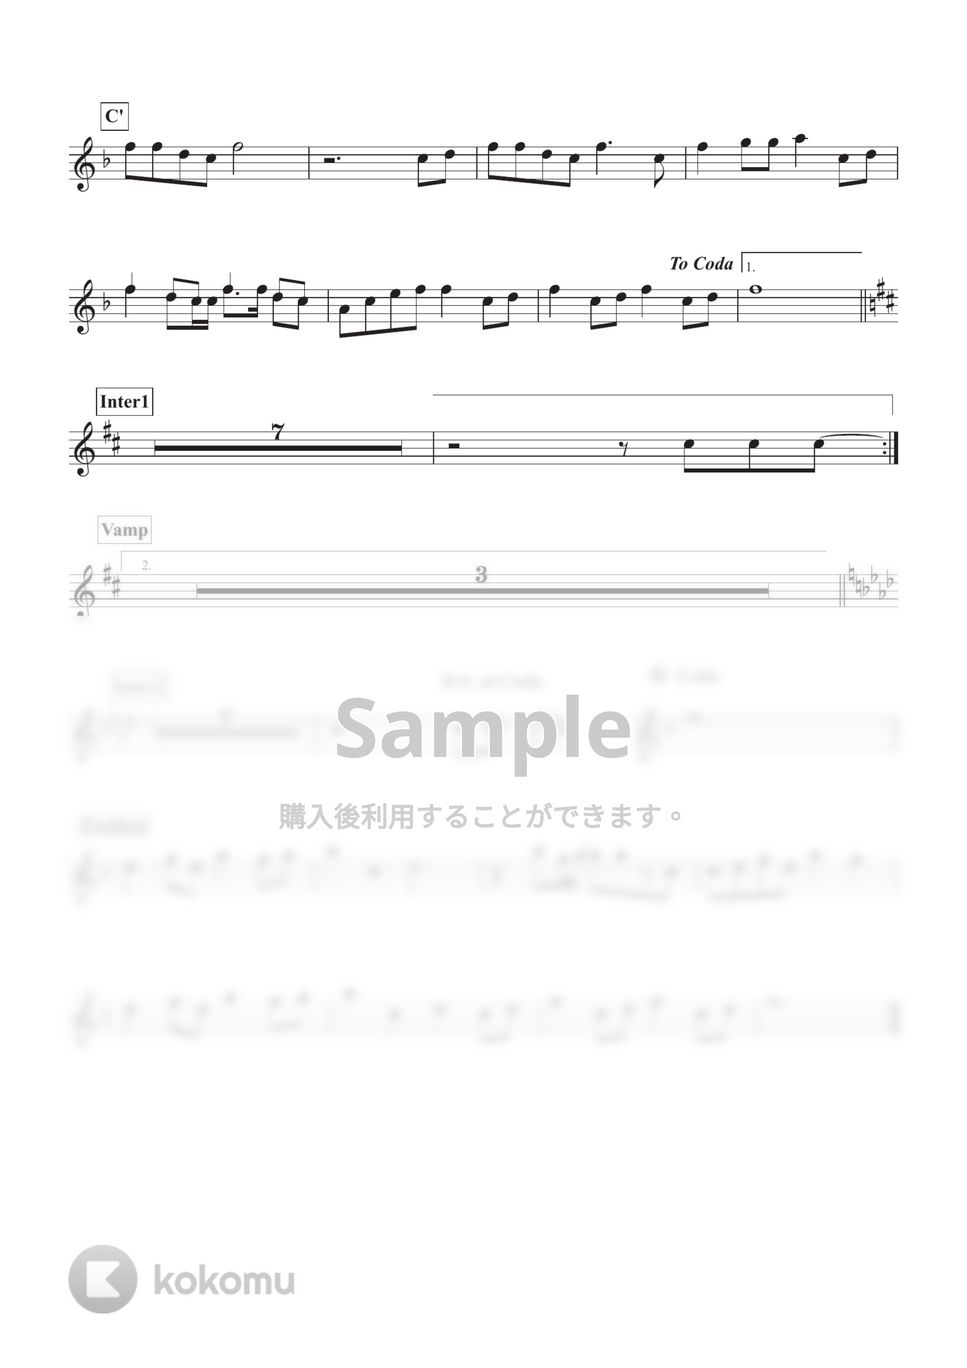 乃木坂46 - I see... (アルトサックス用 inE♭) by ALT Music